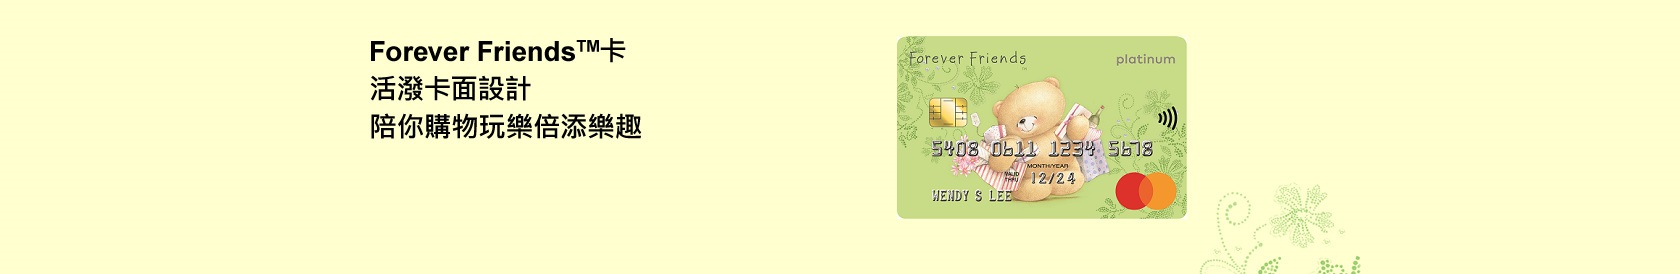 恒生卡類產品 - Forever Friends 卡